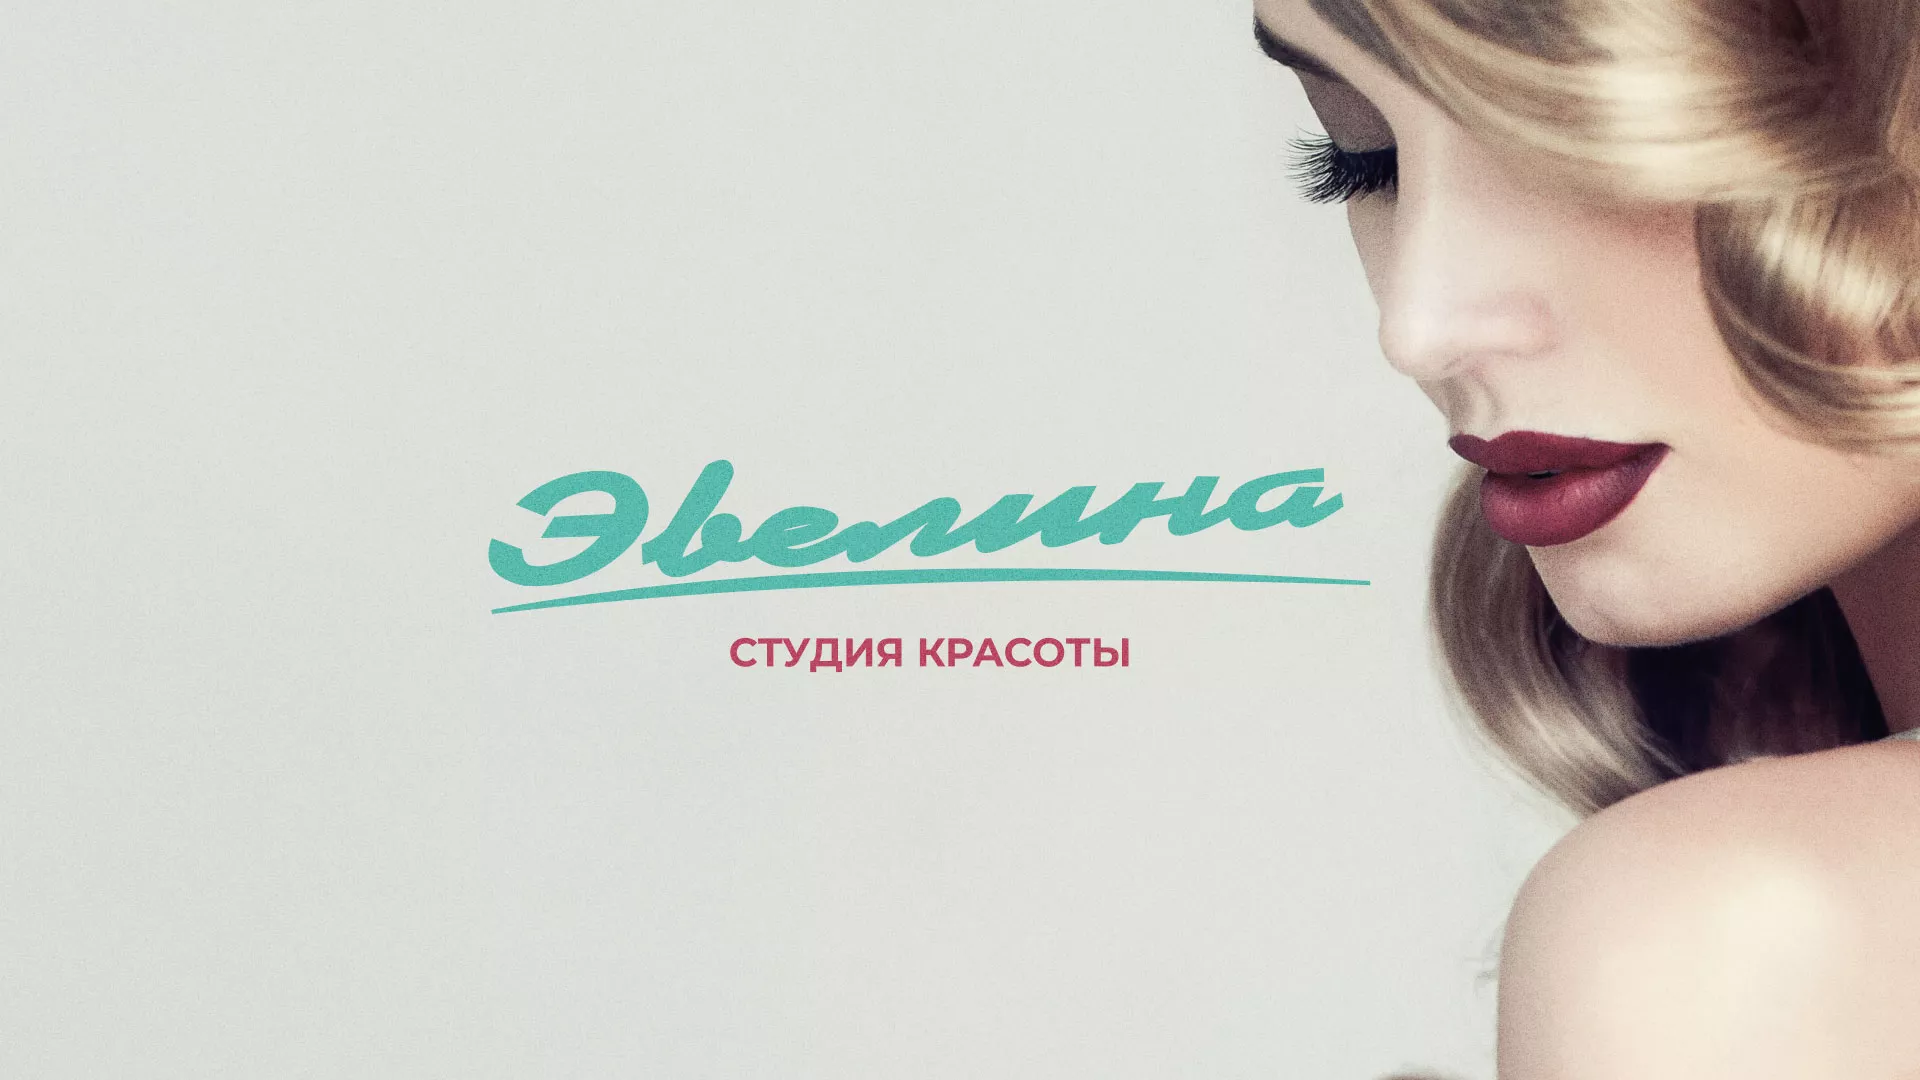 Разработка сайта для салона красоты «Эвелина» в Новоалександровске